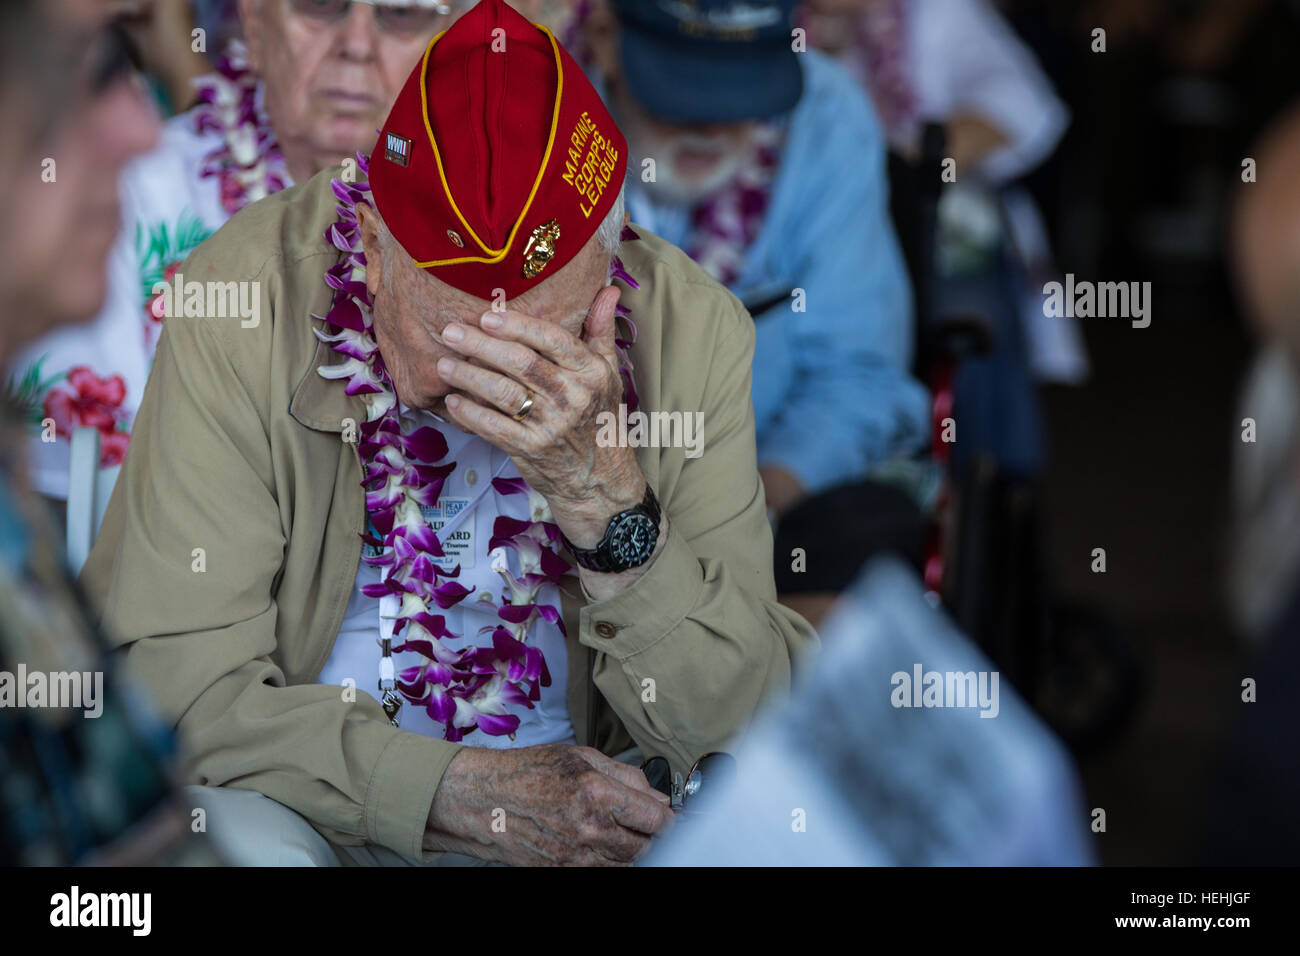 US Weltkrieg veteran und Pearl Harbor Überlebender, die Paul Hillard schreit während Trauer Kameraden ums Leben in Pearl Harbor Angriffen während der 75. Jahrestag nationale Pearl Harbor Volkstrauertag Gedenkfeier am gemeinsamen Basis Pearl Harbor-Hickam 7. Dezember 2016 in Pearl Harbor, Hawaii. Stockfoto